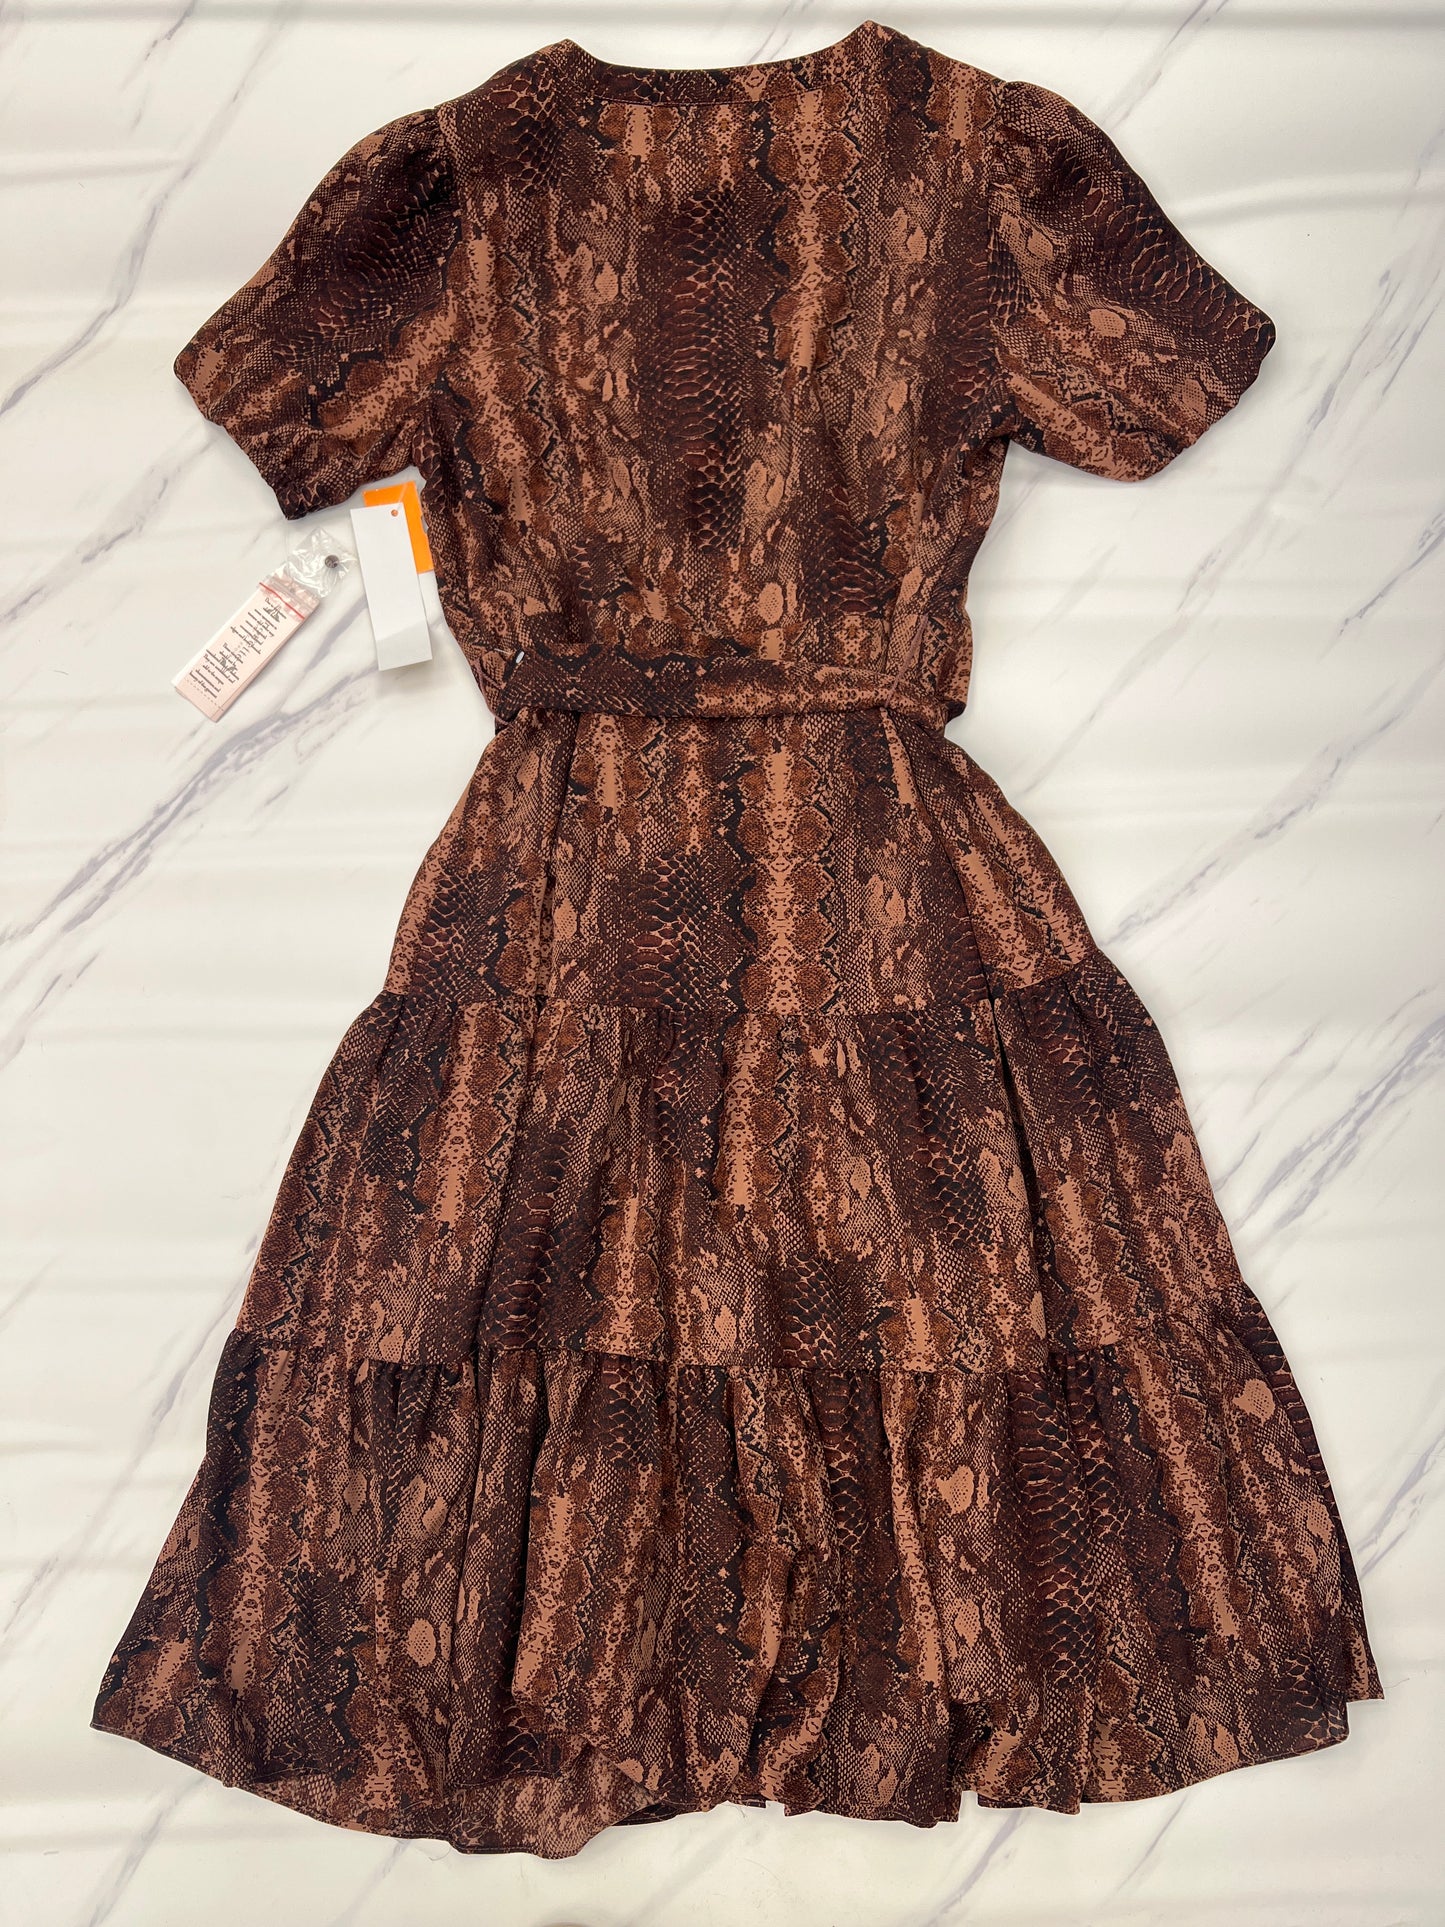 Dress Casual Midi By Nanette By Nanette Lepore  Size: 10